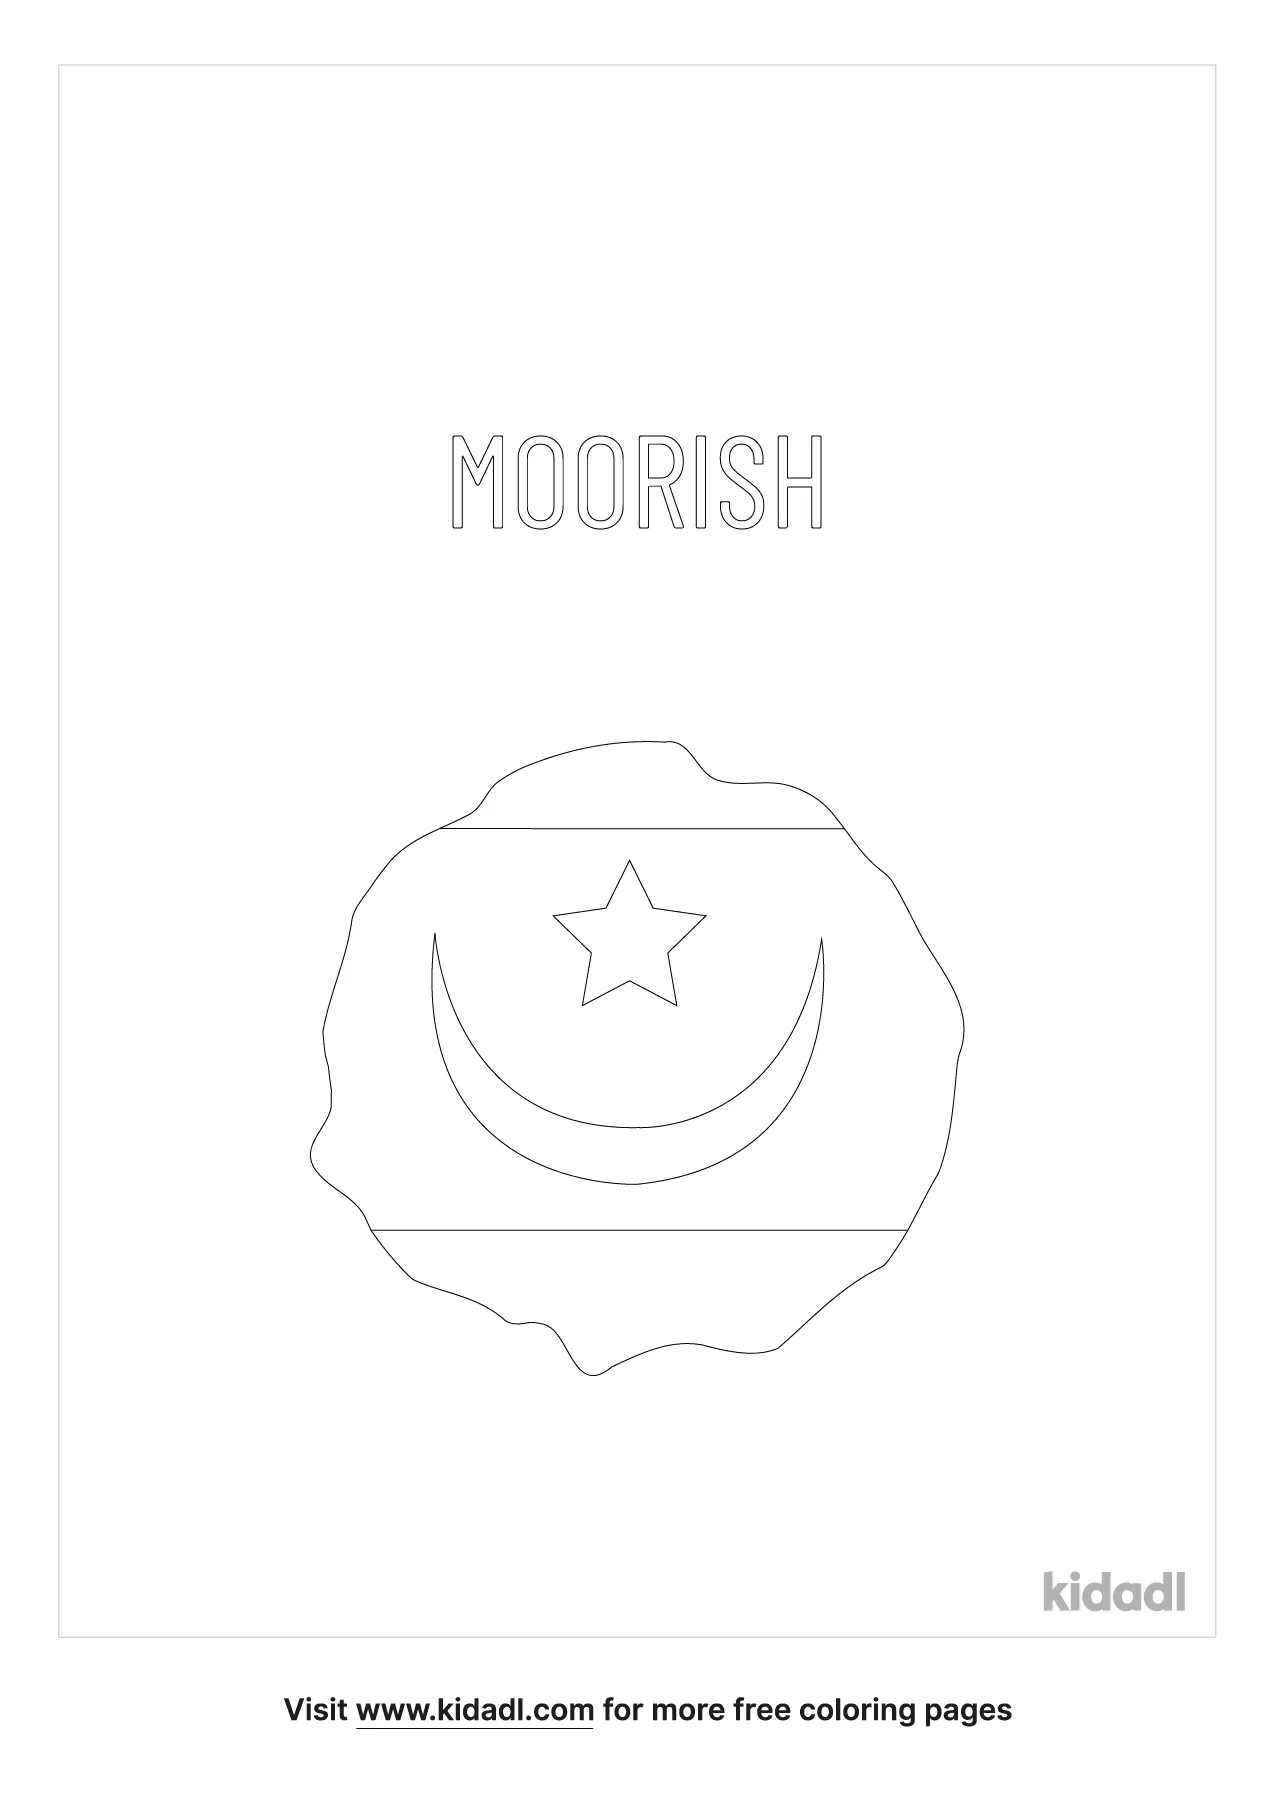 Moorish Flag Coloring Page